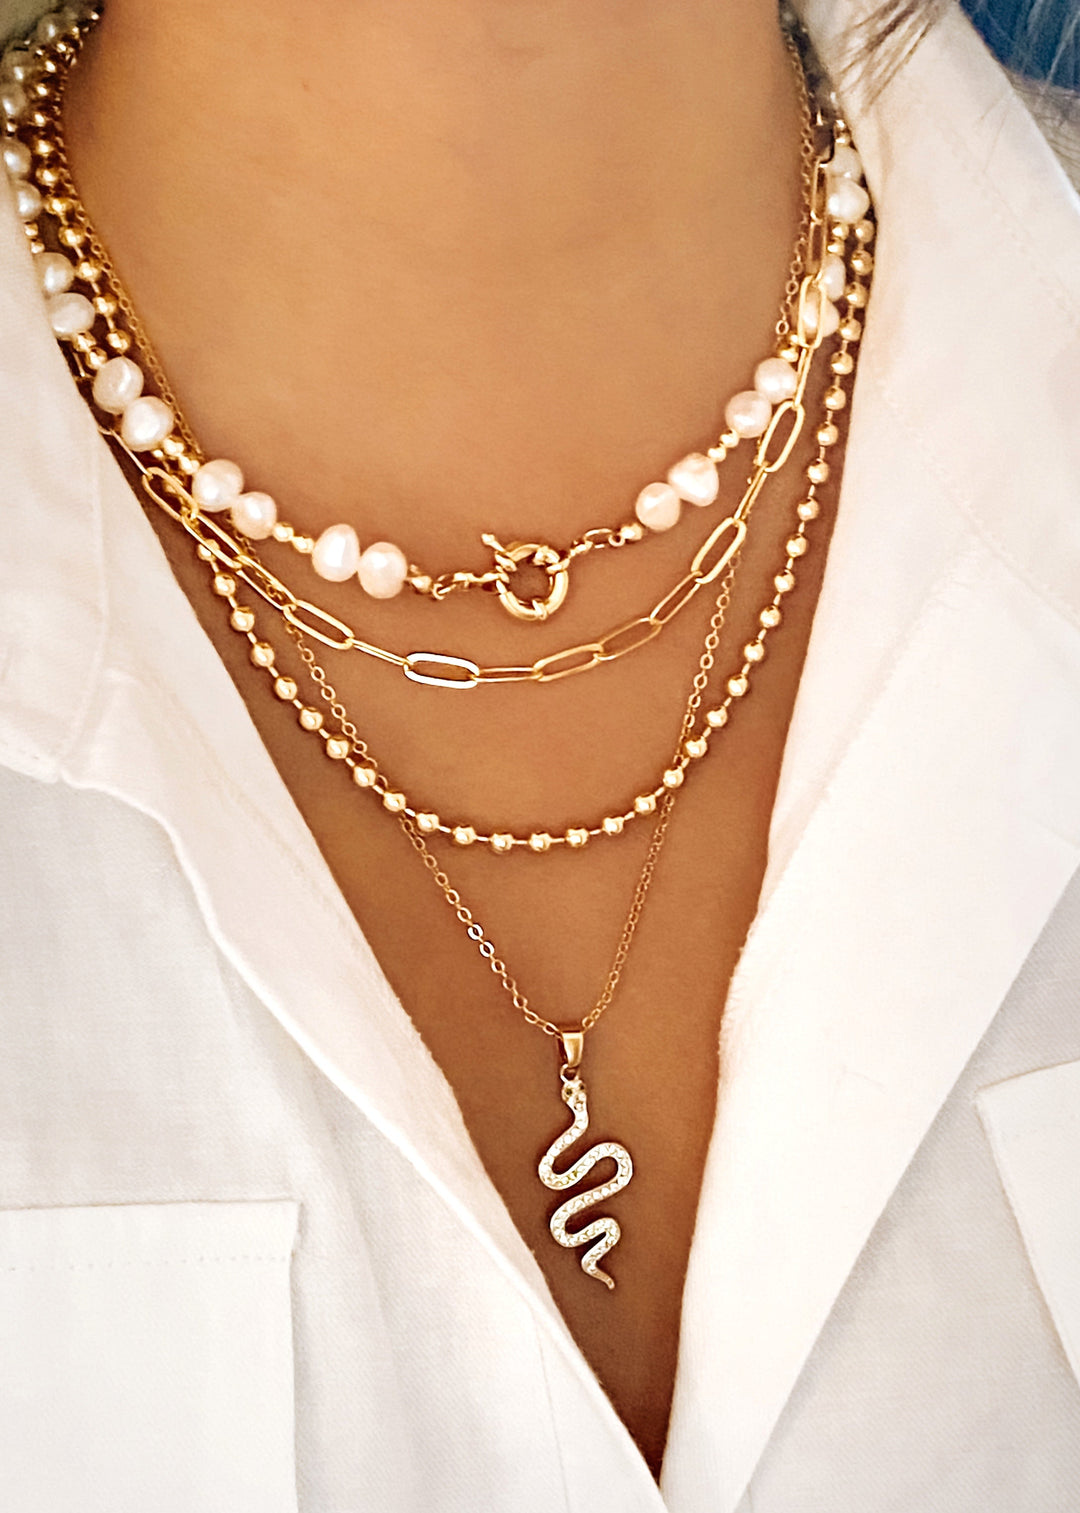 Diamond Snake Necklace - Gold Filled